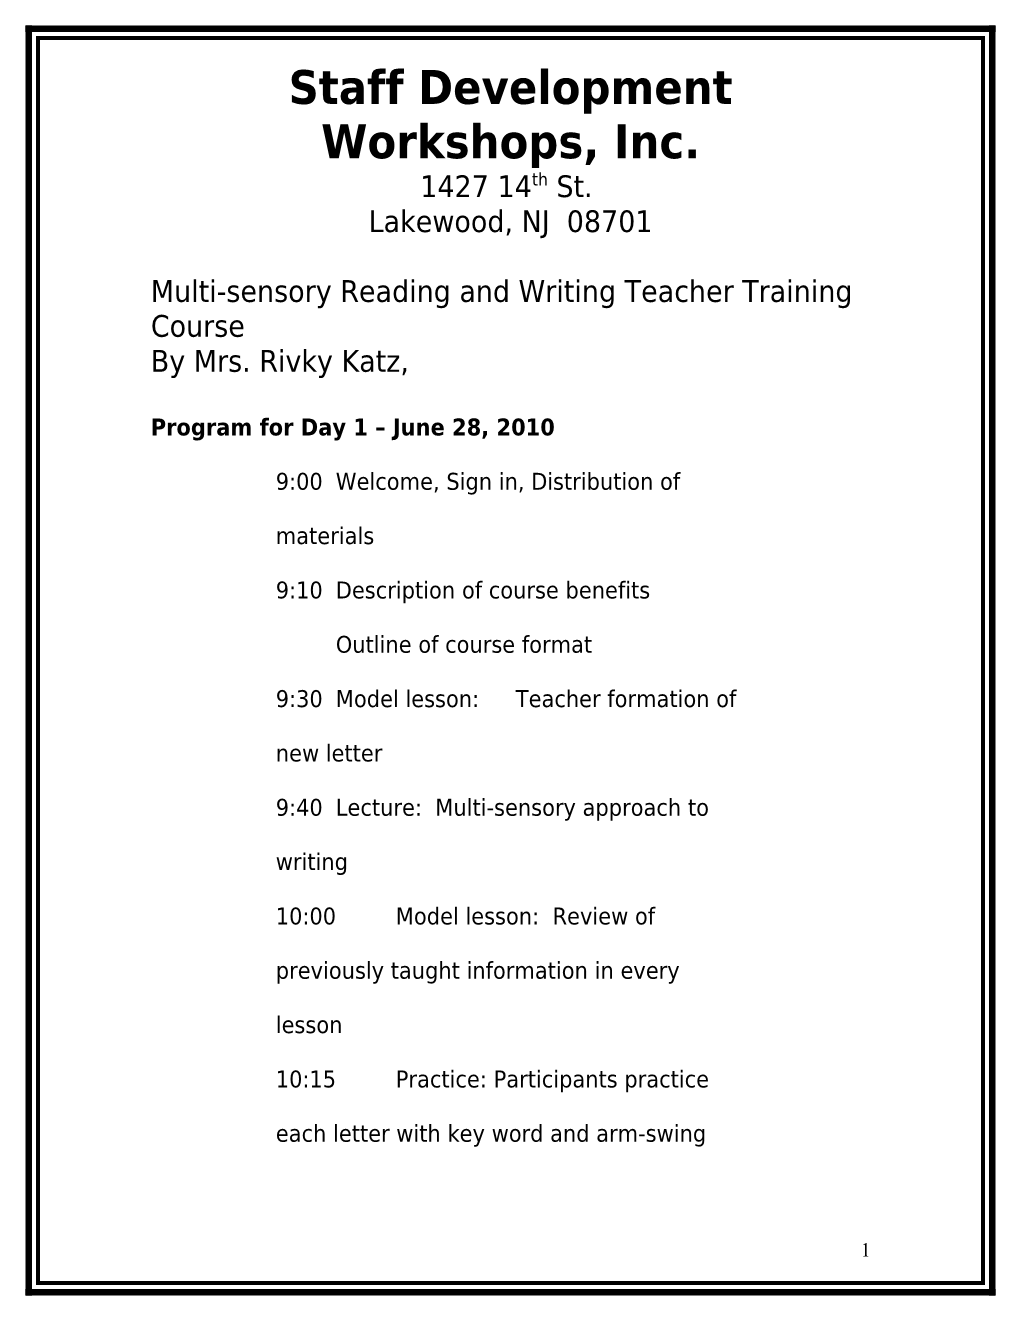 Program for Day 1 June 28, 2010